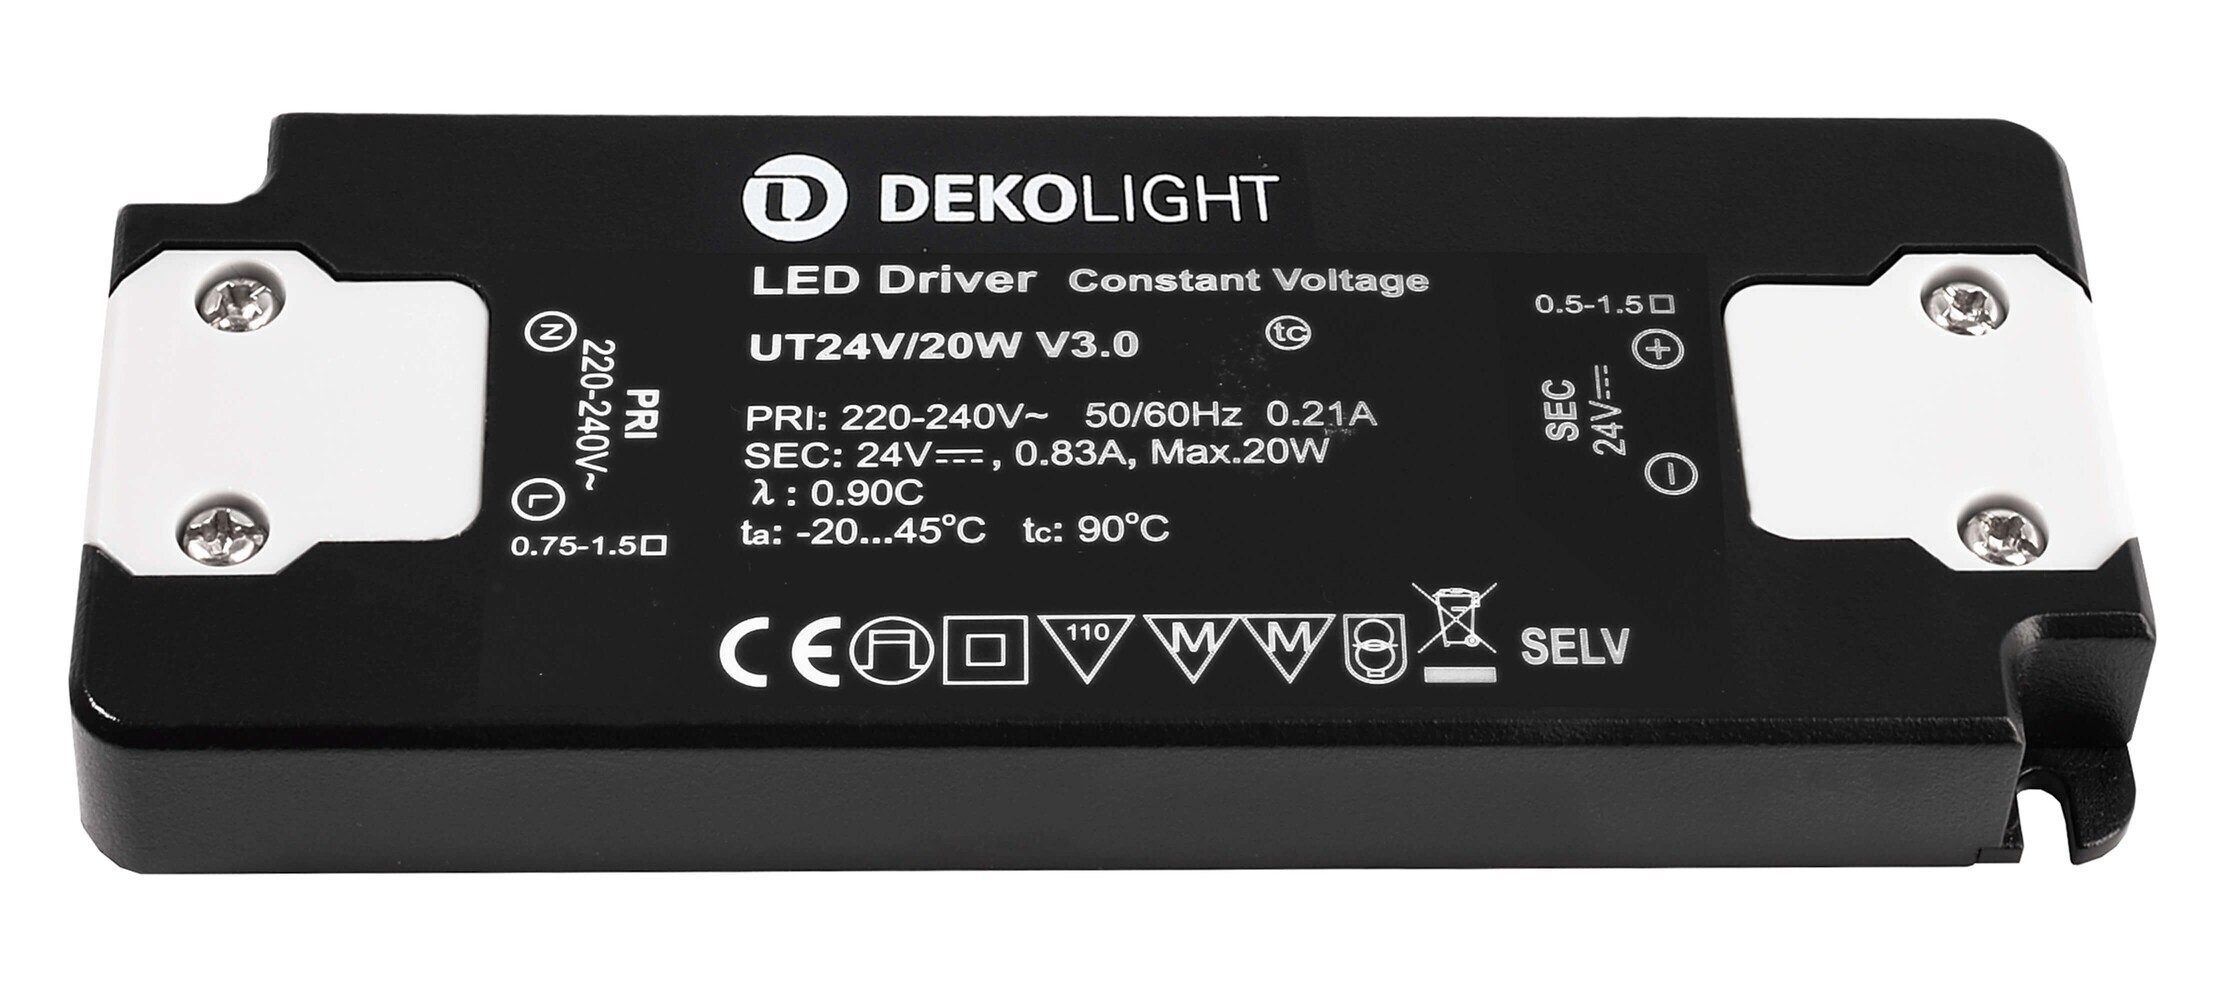 Schlankes und energieeffizientes LED Netzteil von Deko-Light, das konstante Spannung liefert